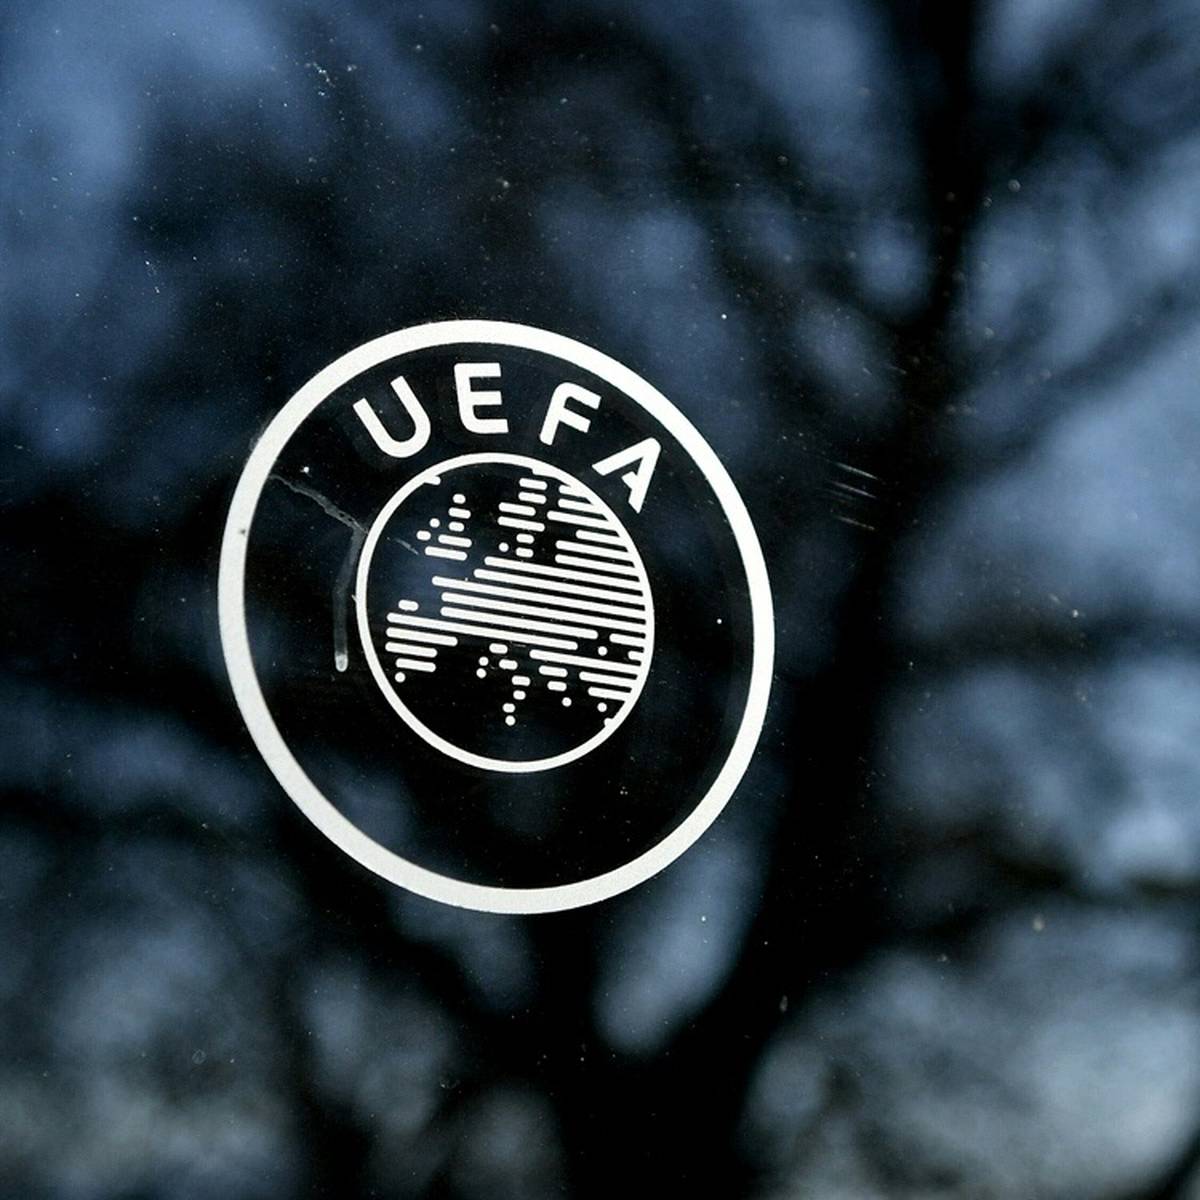 Der Bayerische Fußball-Verband (BFV) entsendet seine Vizepräsidentin Silke Raml in die Frauenfußball-Kommission der Europäischen Fußball-Union (UEFA).